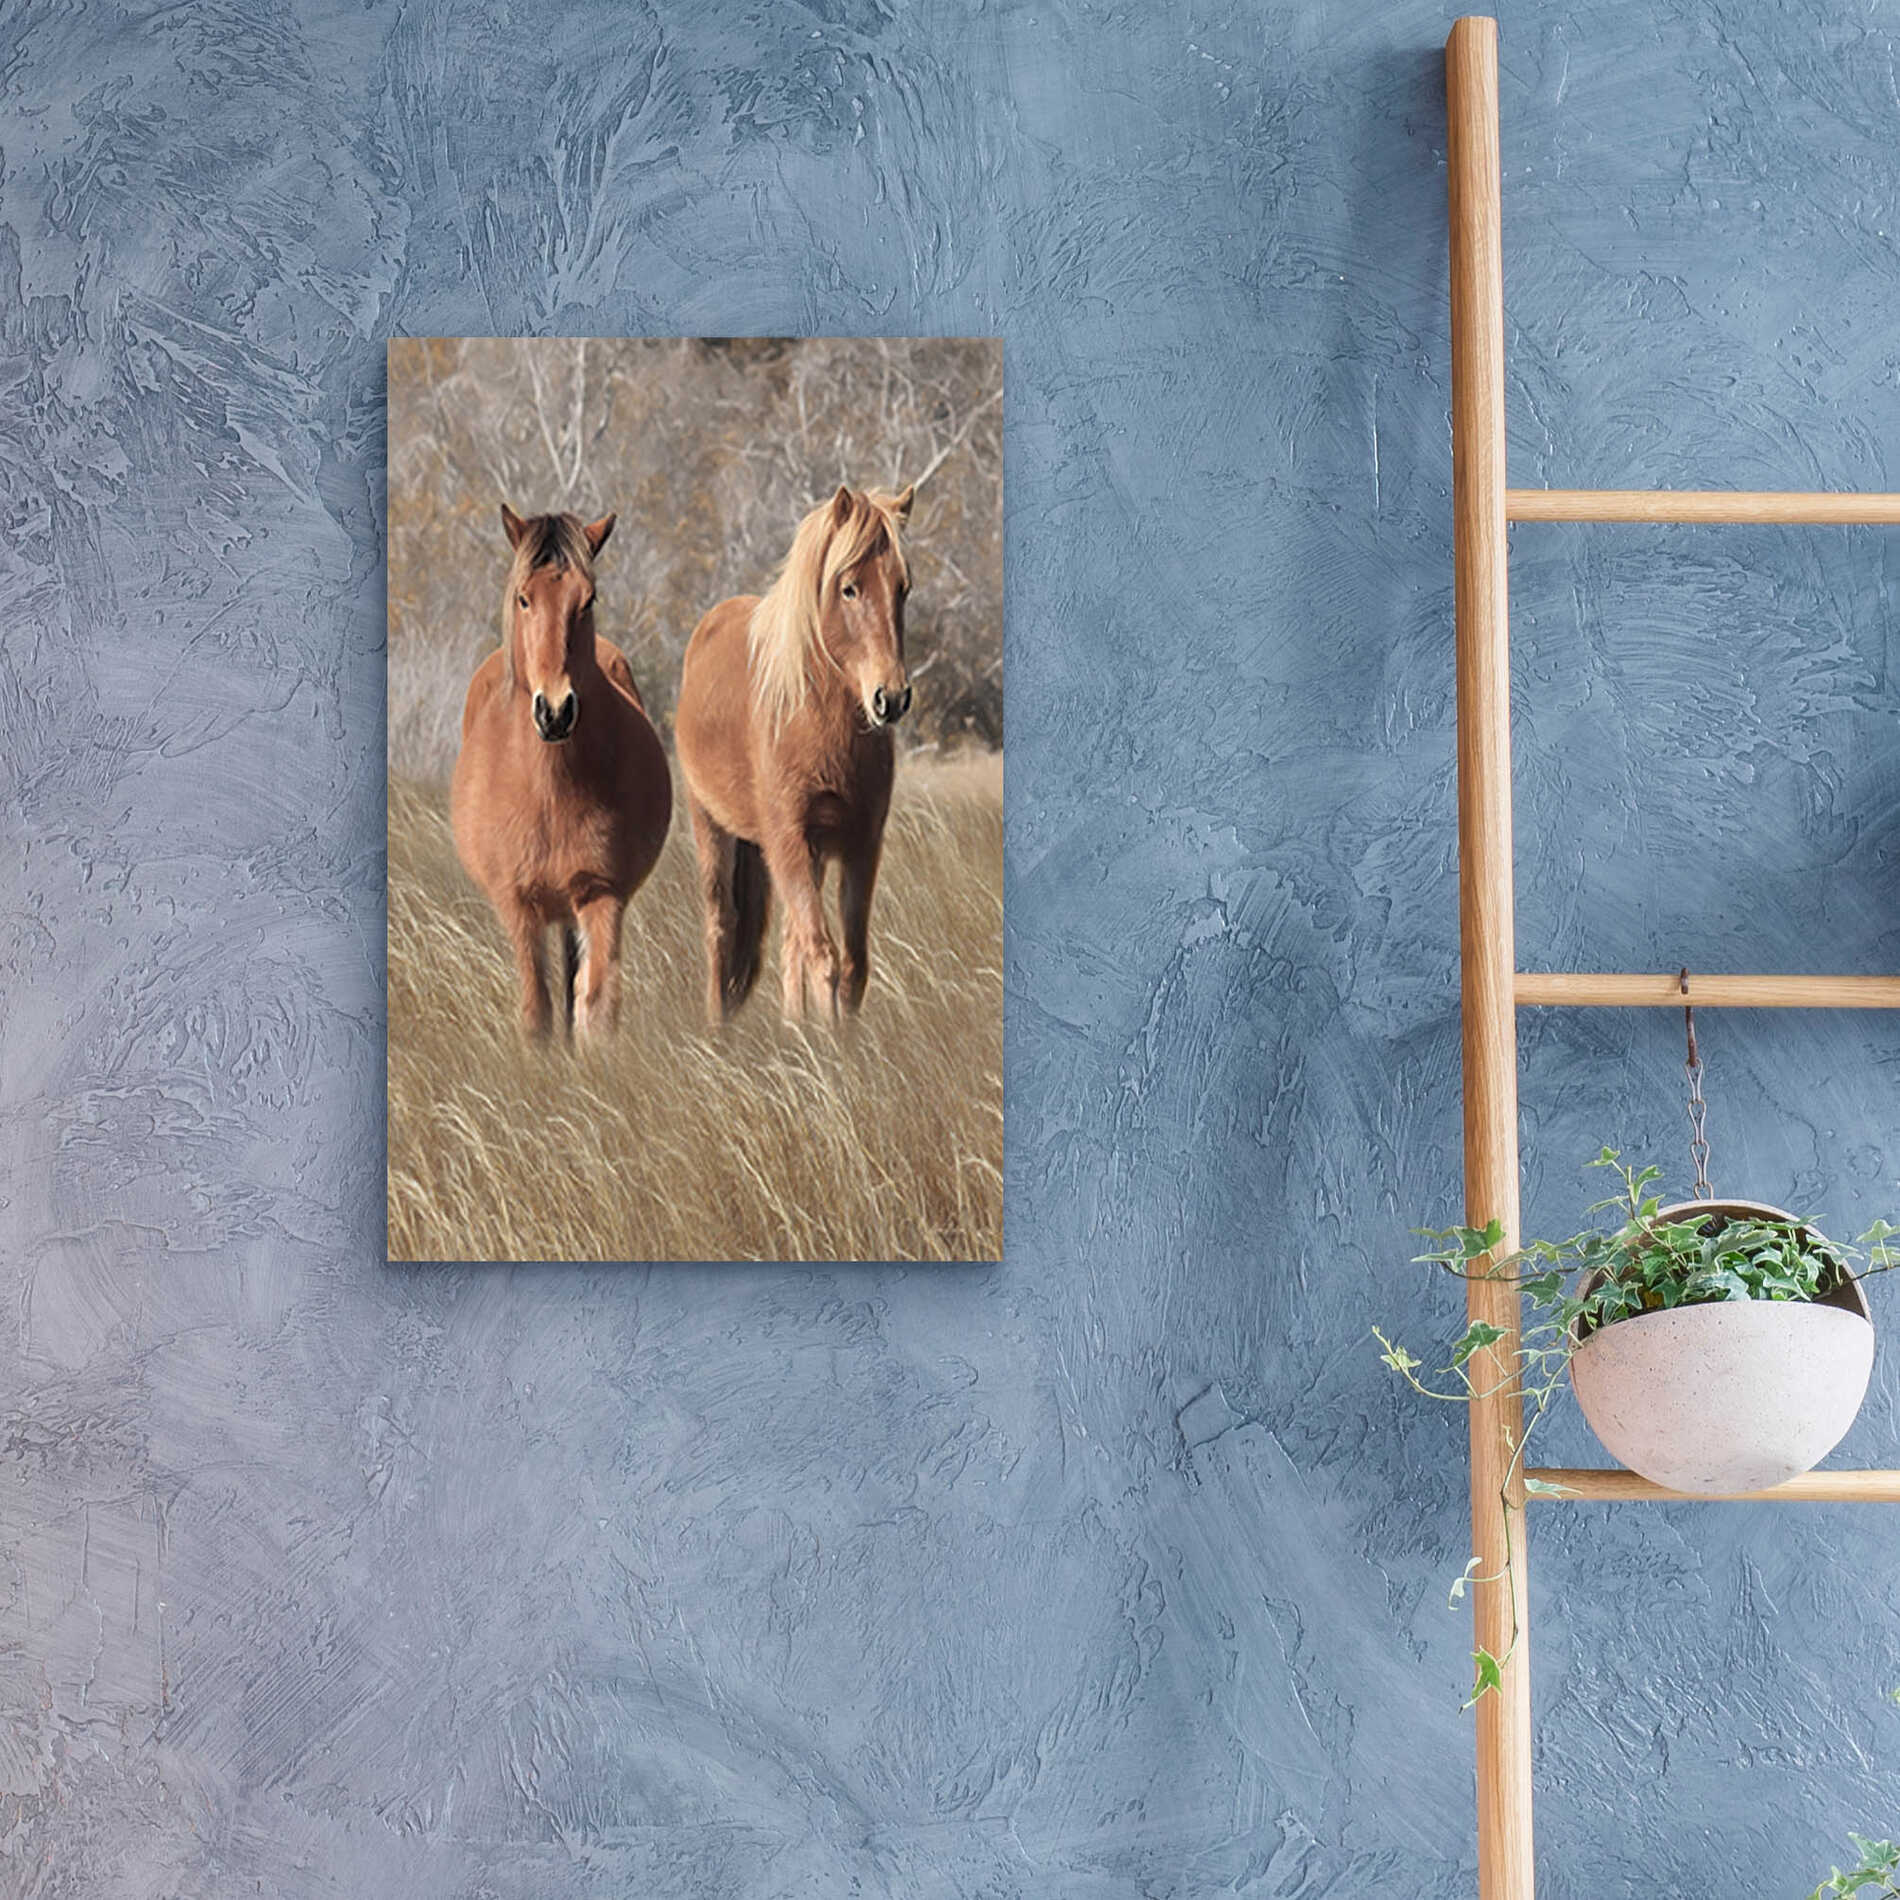 Epic Art 'Assateague Horses IV' by Lori Deiter, Acrylic Glass Wall Art,16x24